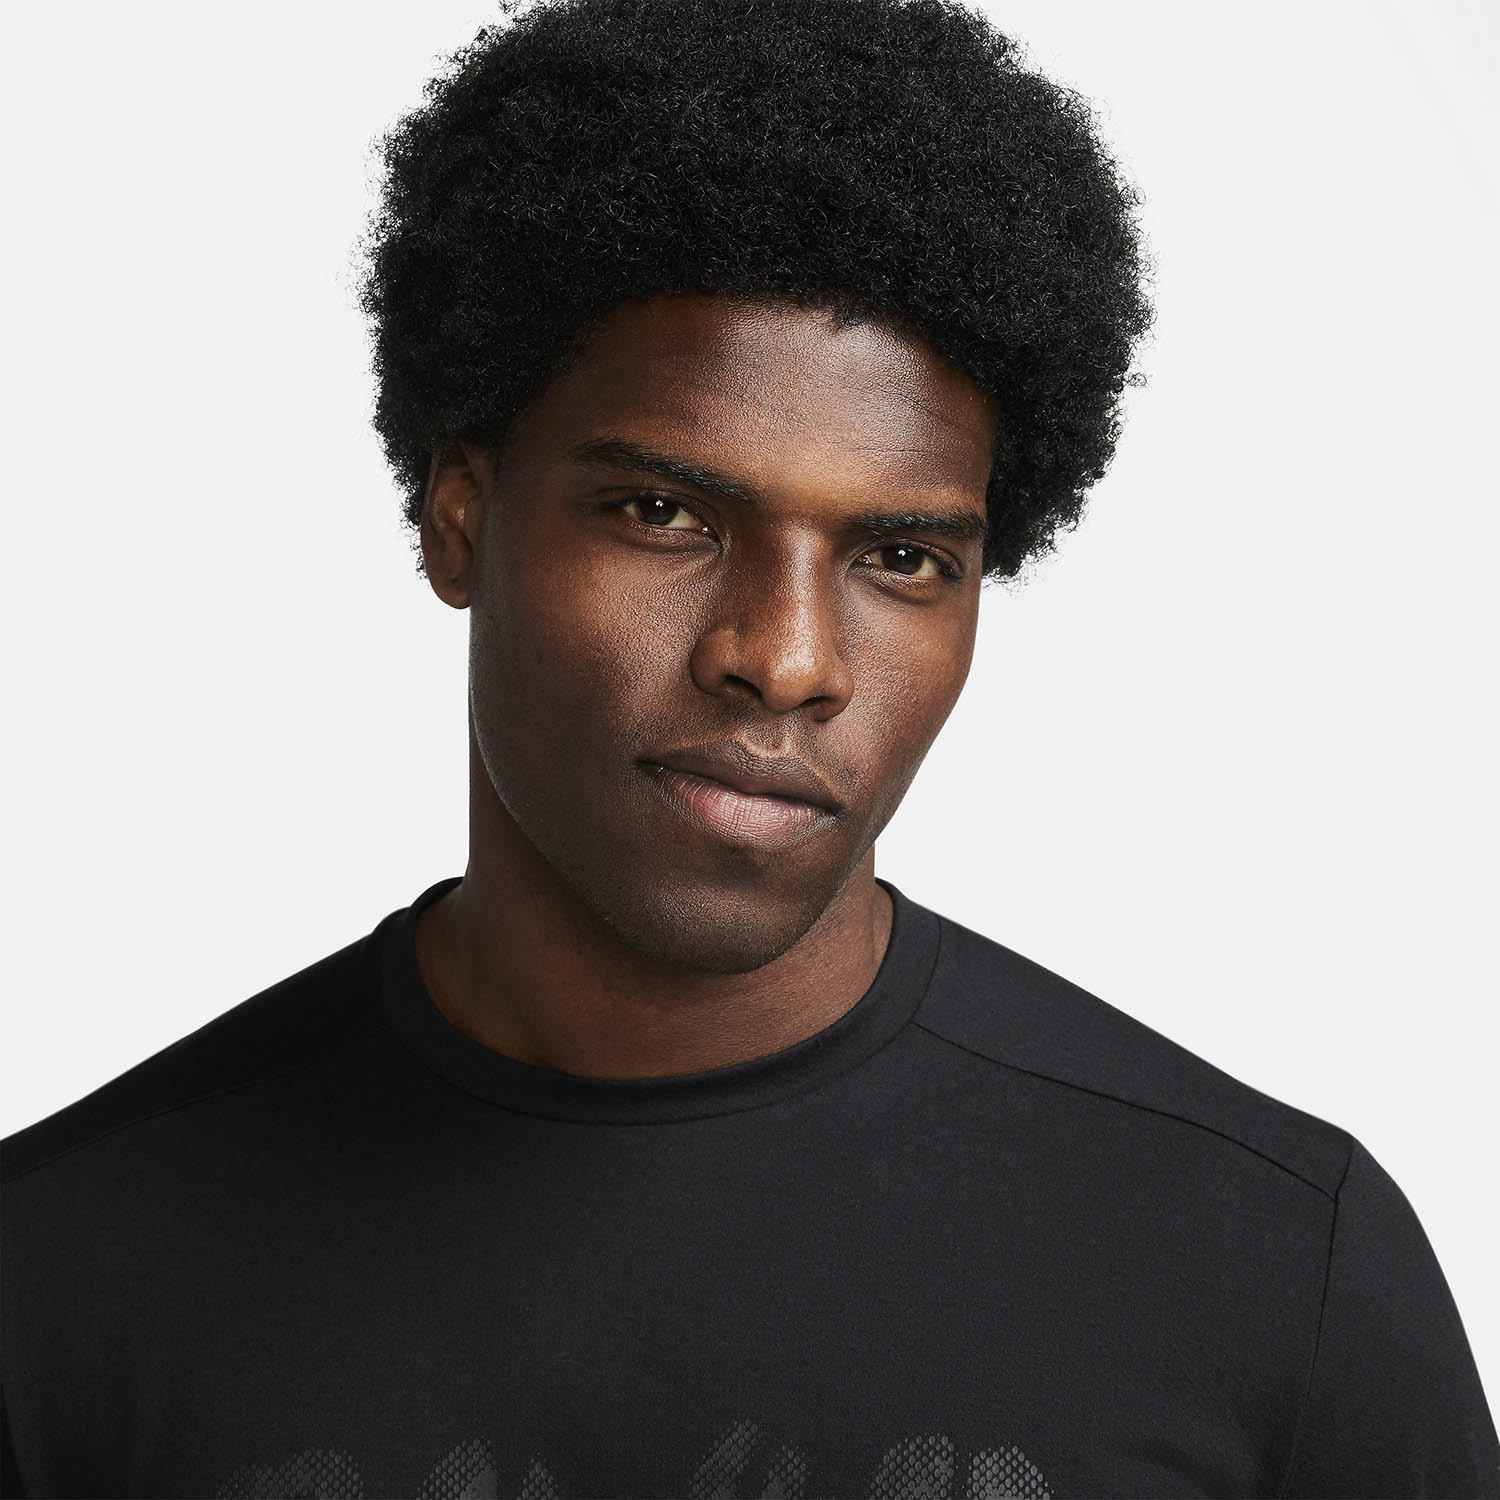 Nike Rise 365 Camiseta - Black/Reflective Black